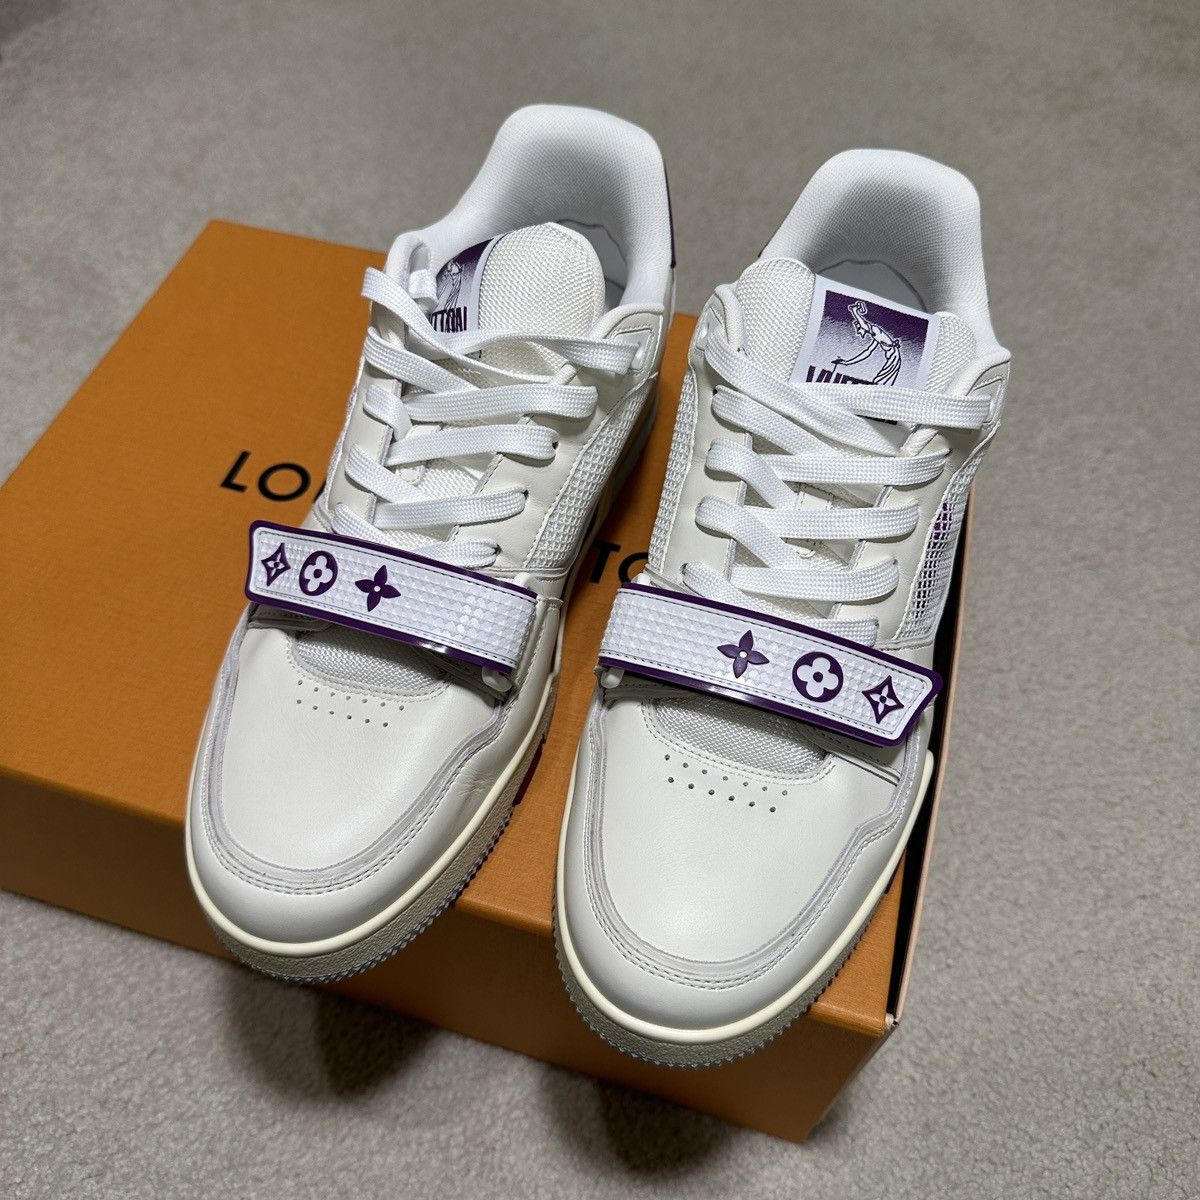 Louis Vuitton LV Trainer Sneaker Violet. Size 11.0